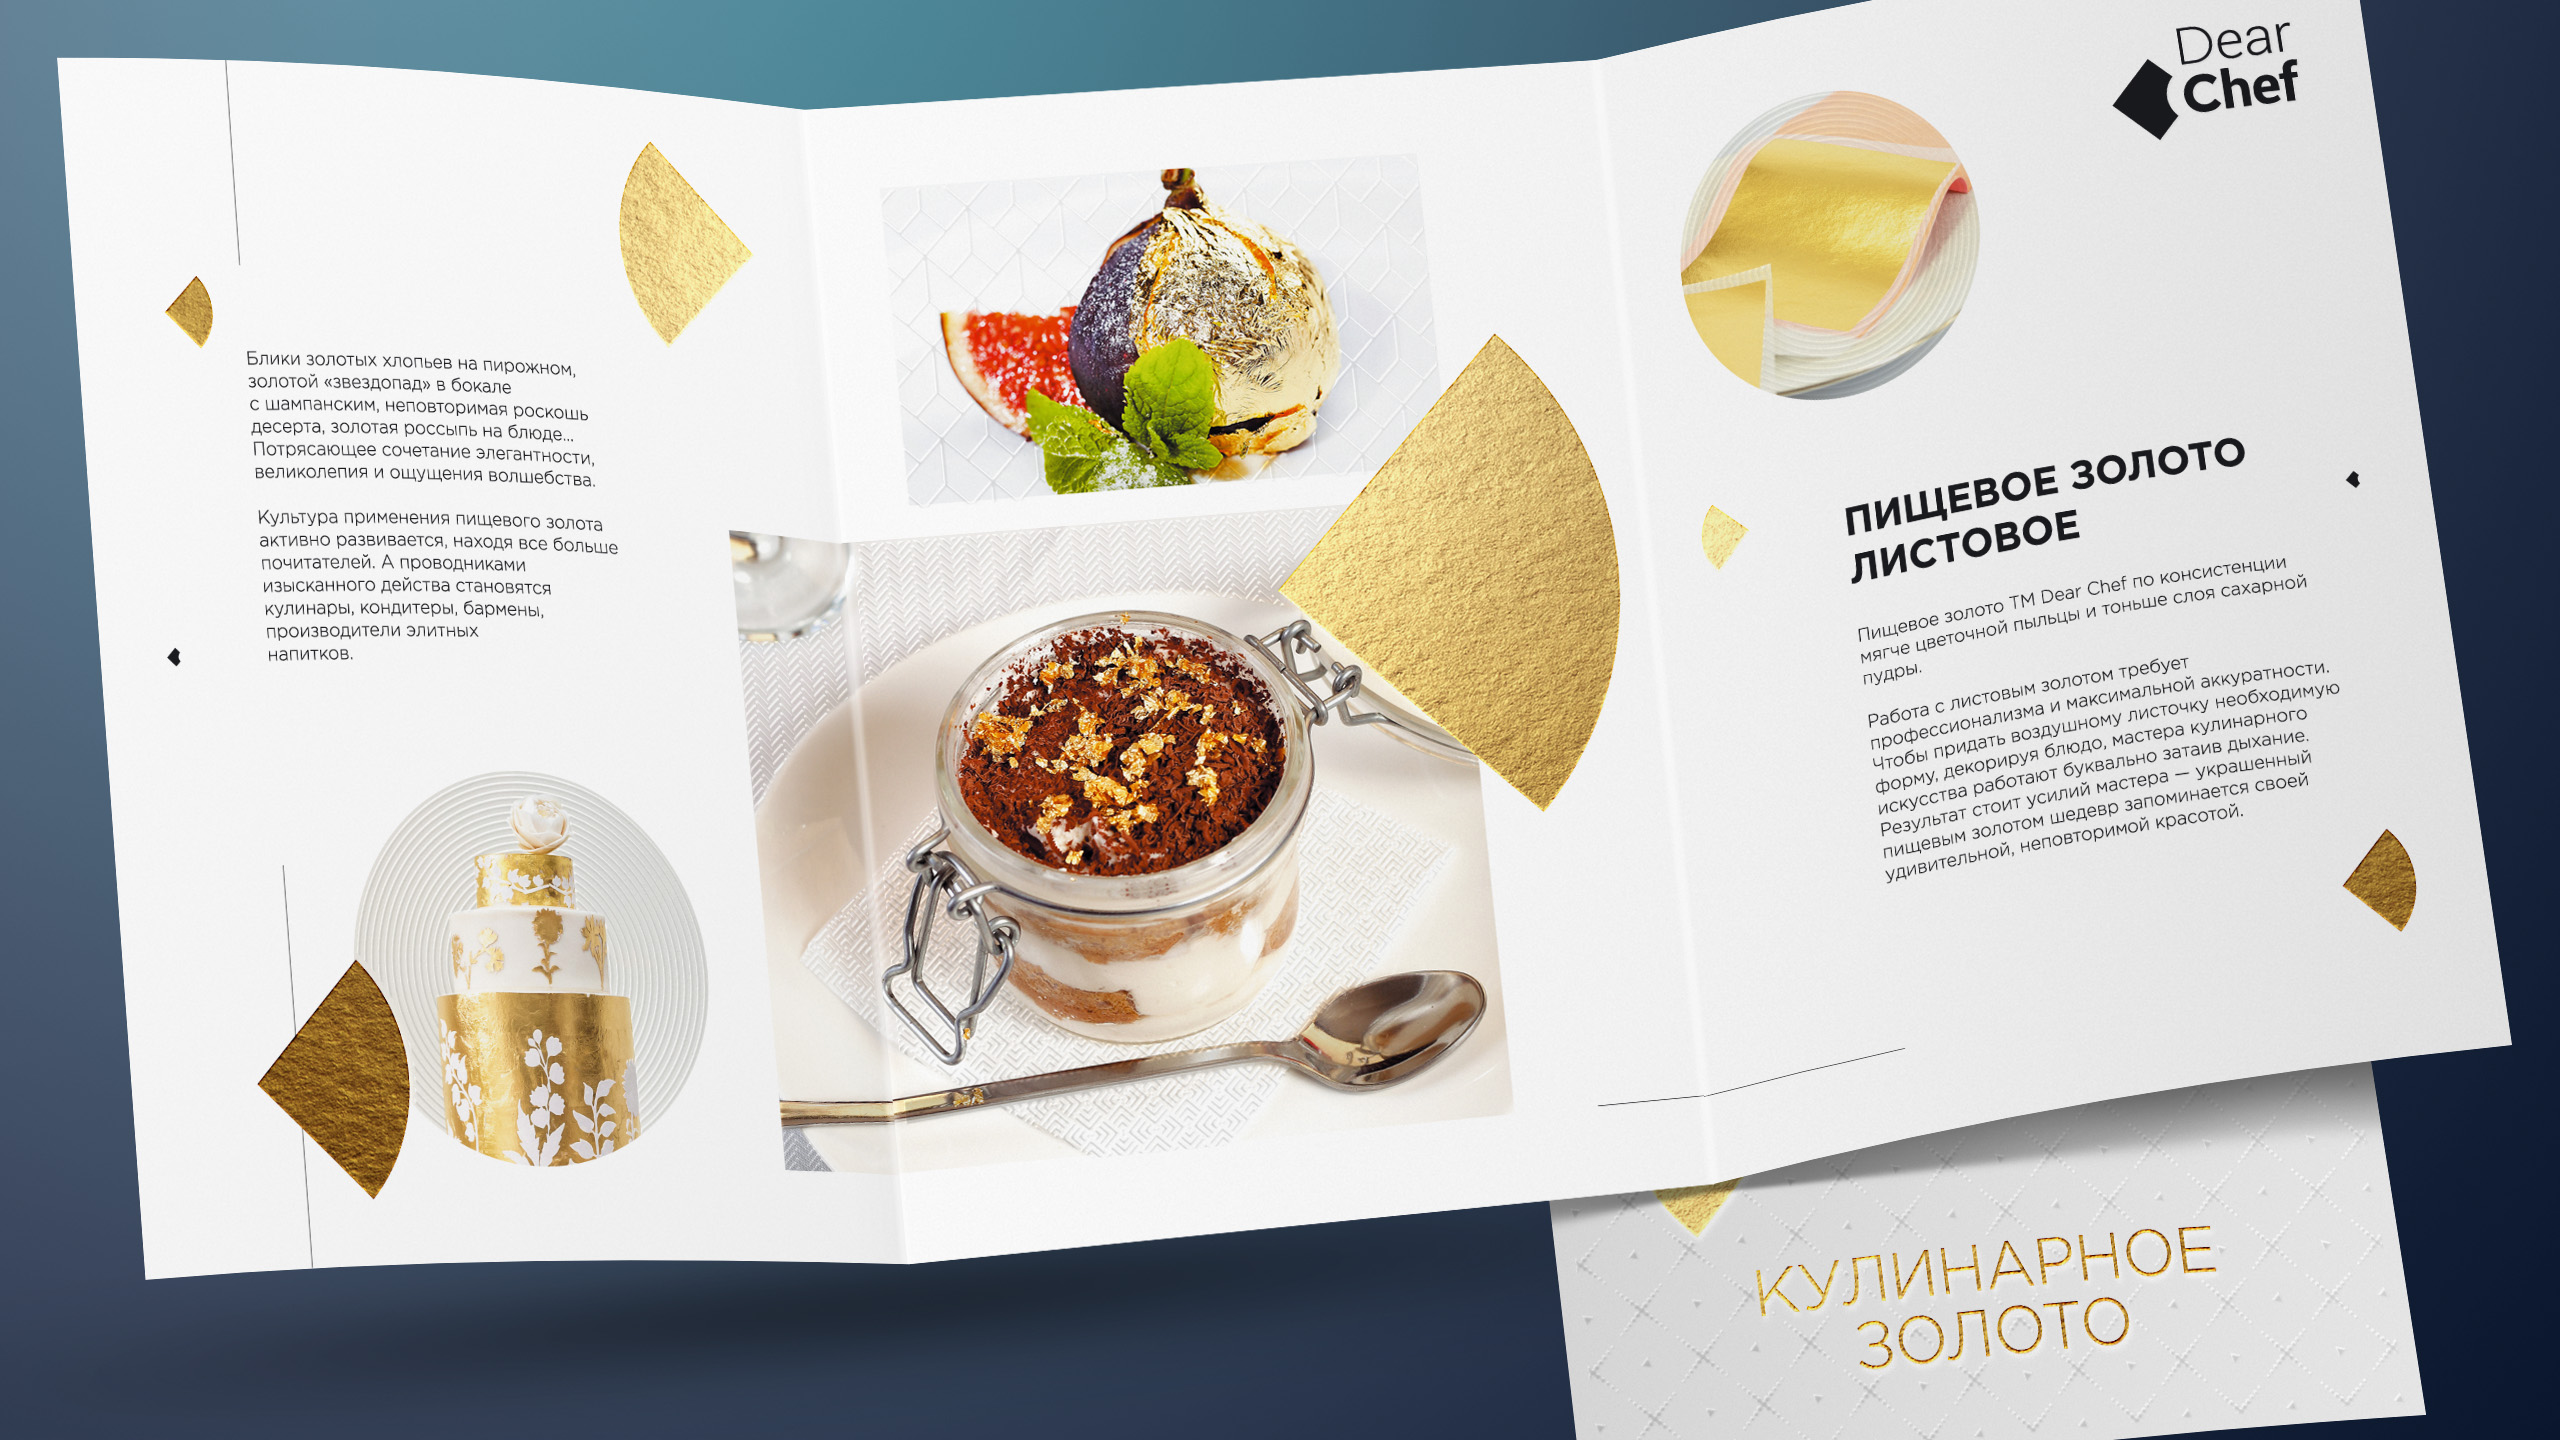 Буклет компании по реализации пищевого золота Dear Chef